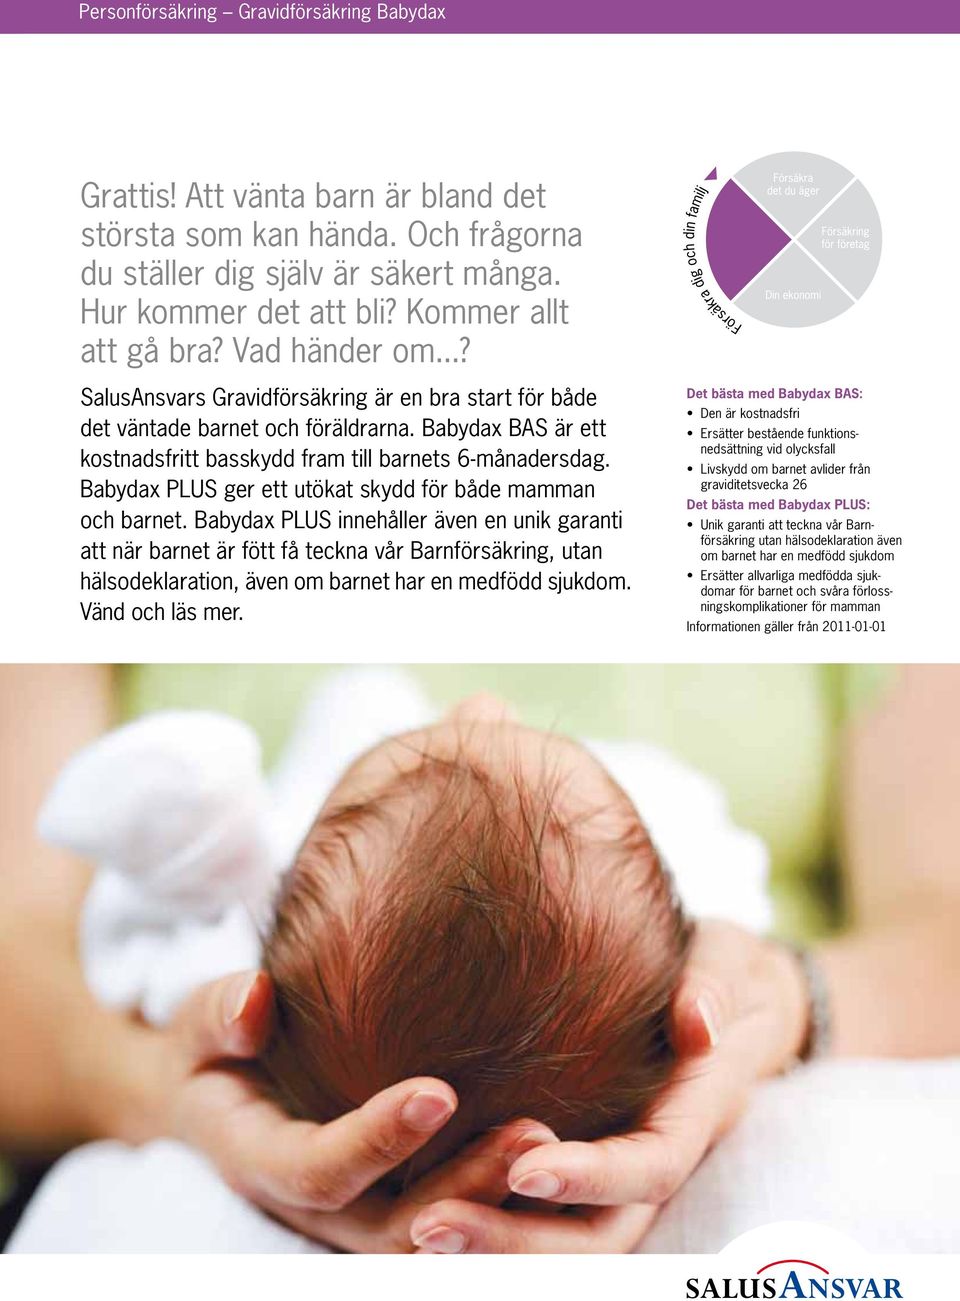 Babydax PLUS ger ett utökat skydd för både mamman och barnet.